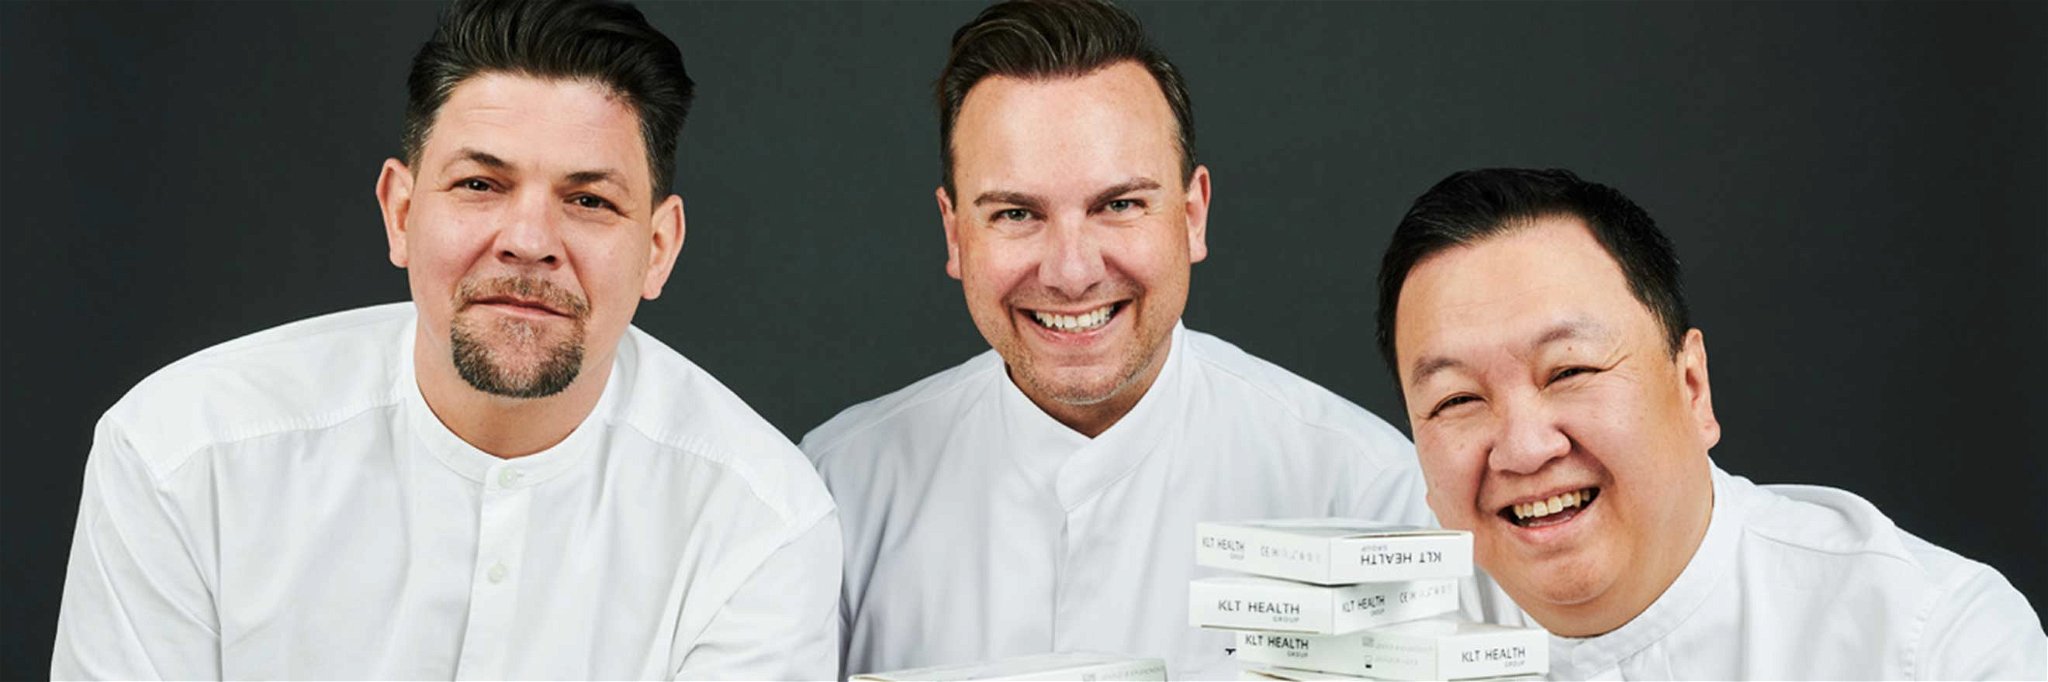 Die Top-Gastronomen Tim Mälzer, Tim Raue und The Duc Ngo vertreiben Corona-Tests unabhängig von öffentlichen Stellen.